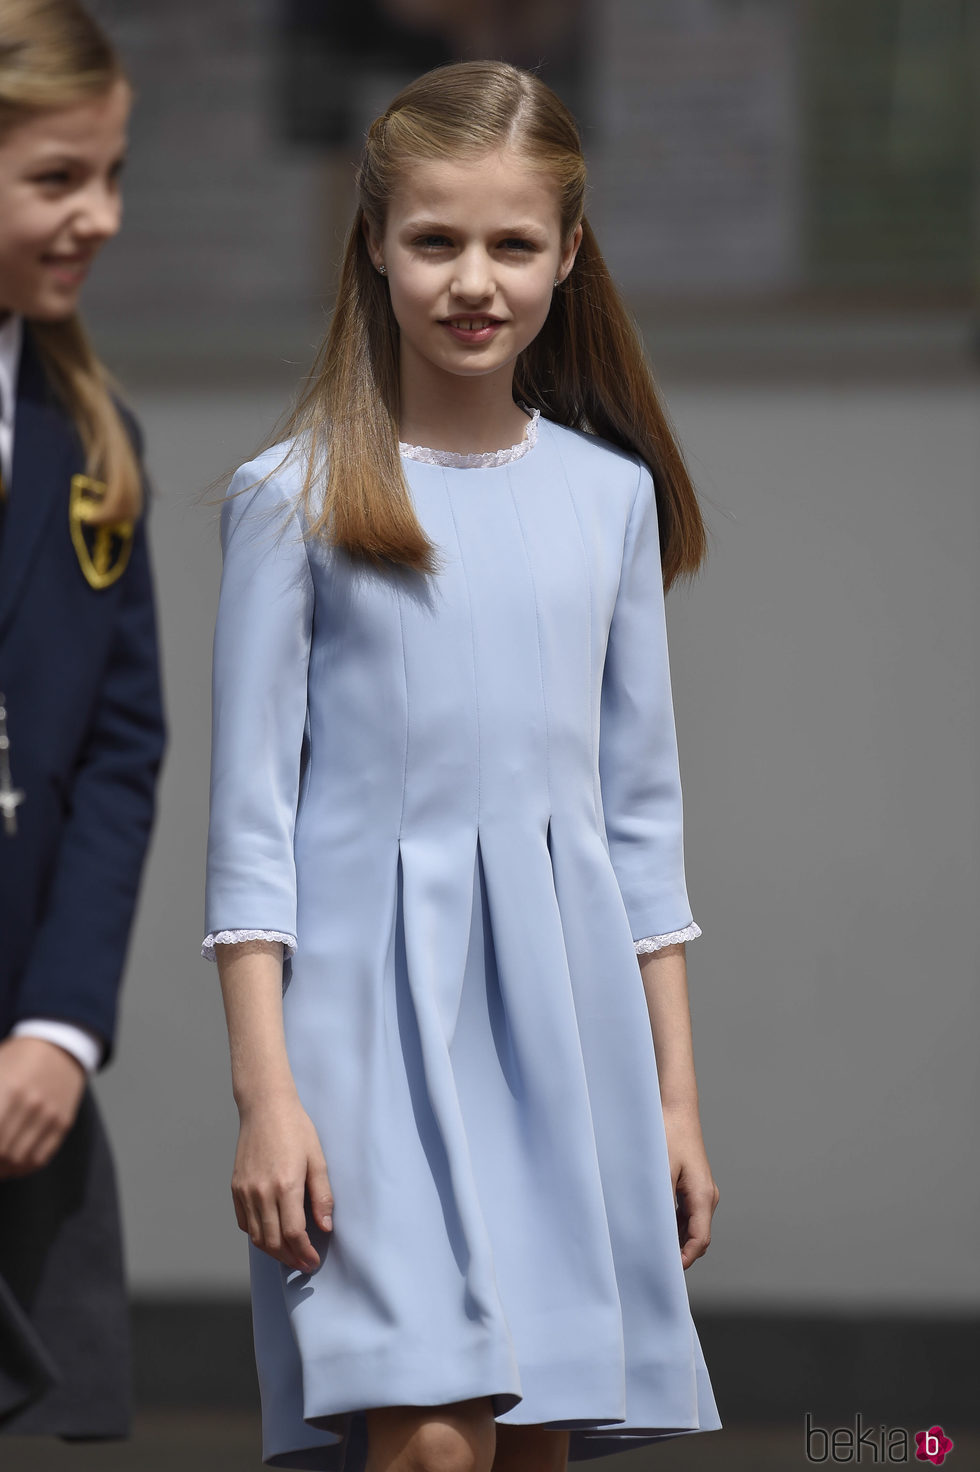 La Princesa Leonor llegando a la Primera Comunión de su hermana la Infanta Sofía